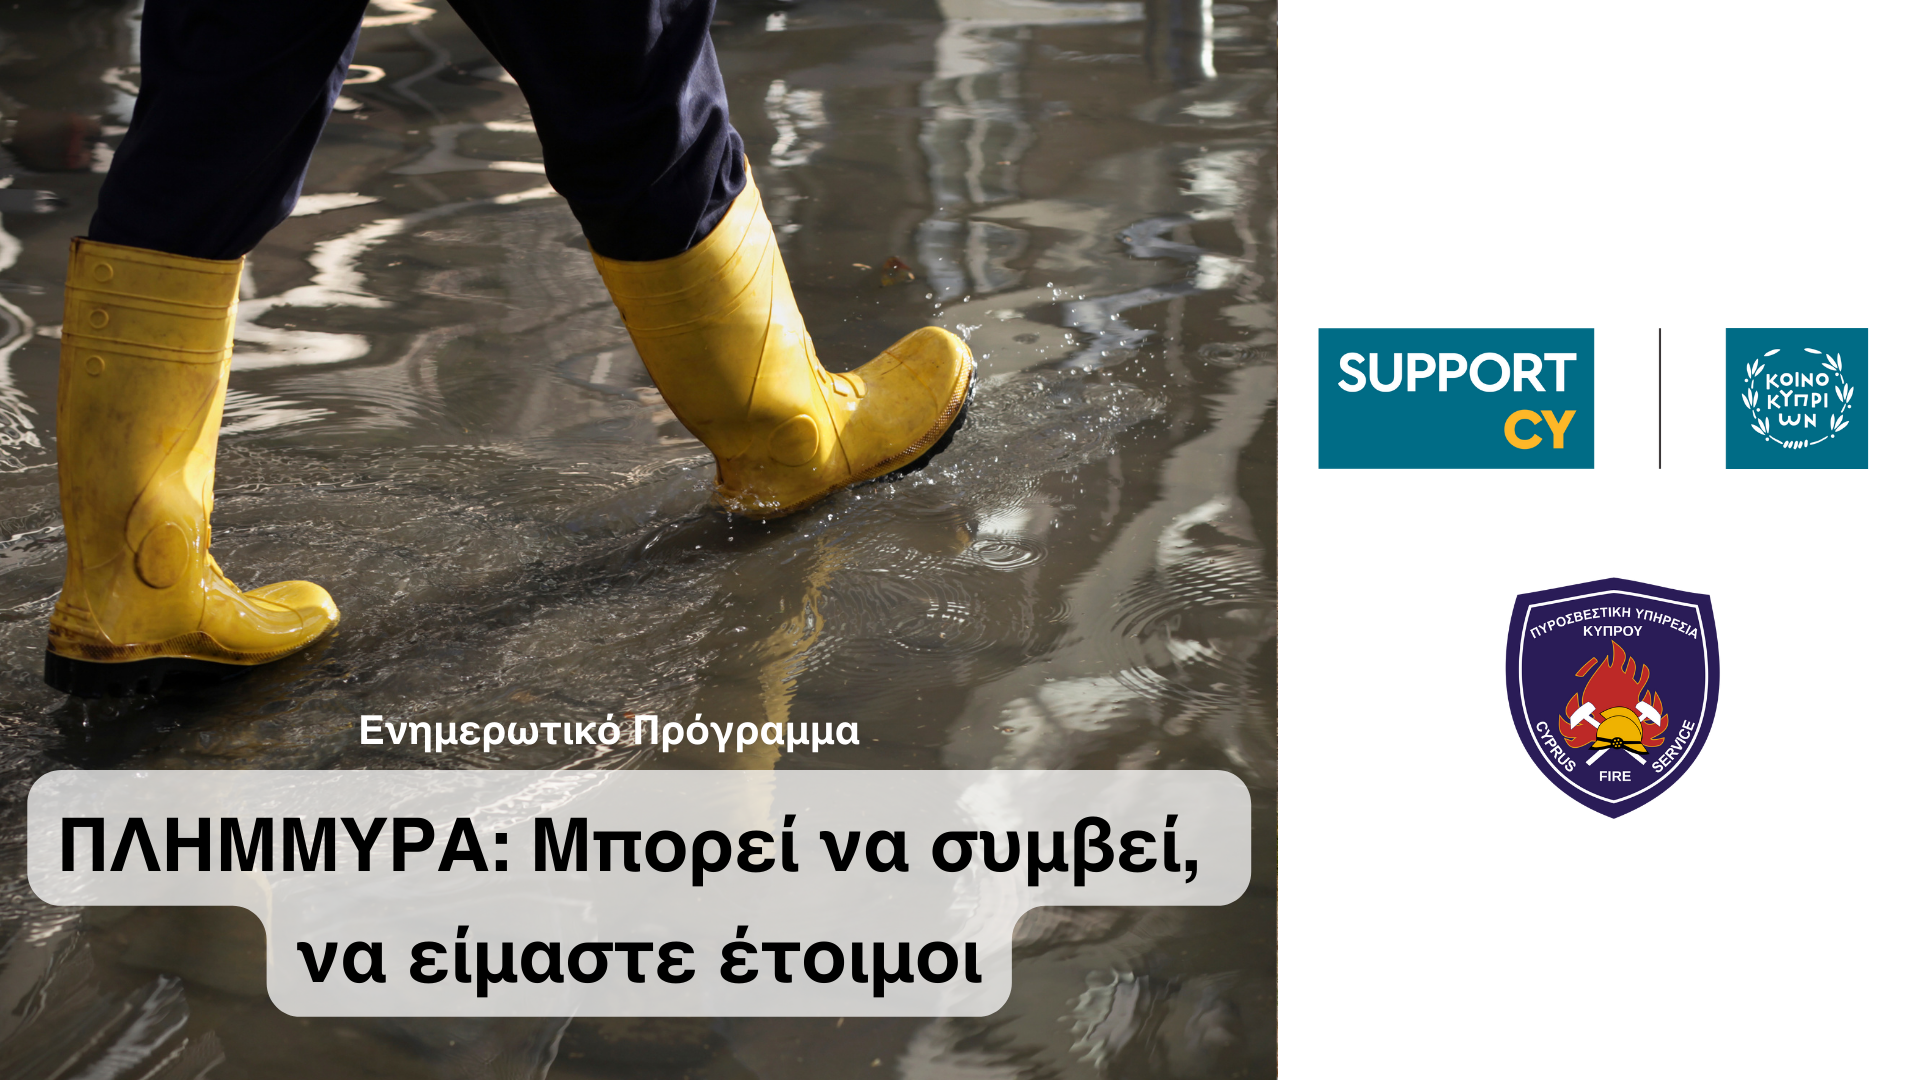 Κοινή Ενημερωτική Εκστρατεία SupportCY και Πυροσβεστικής Υπηρεσίας για τις πλημμύρες